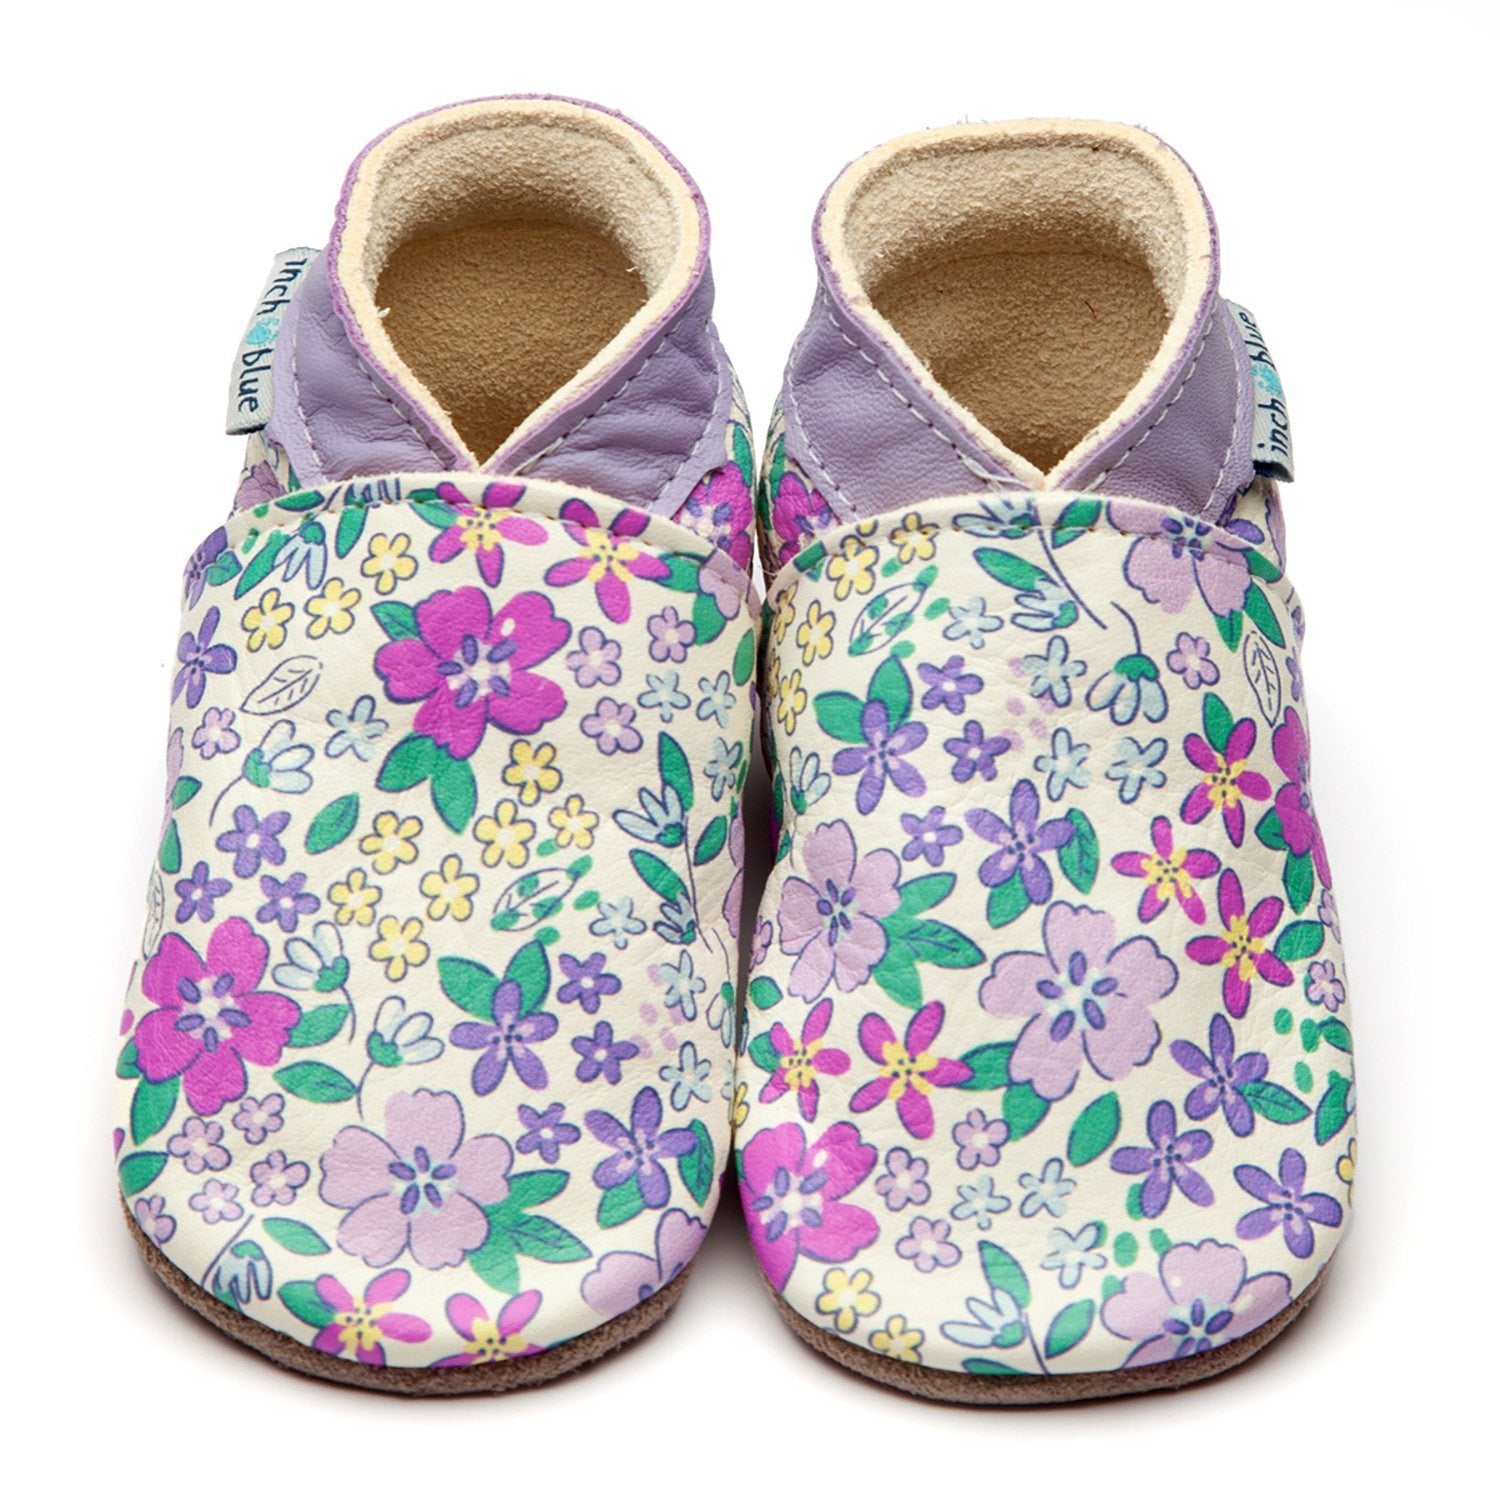 Inch Blue Baby Shoes Violet 4057 Footwear 0-6M / Violet,6-12M / Violet,12-18M / Violet